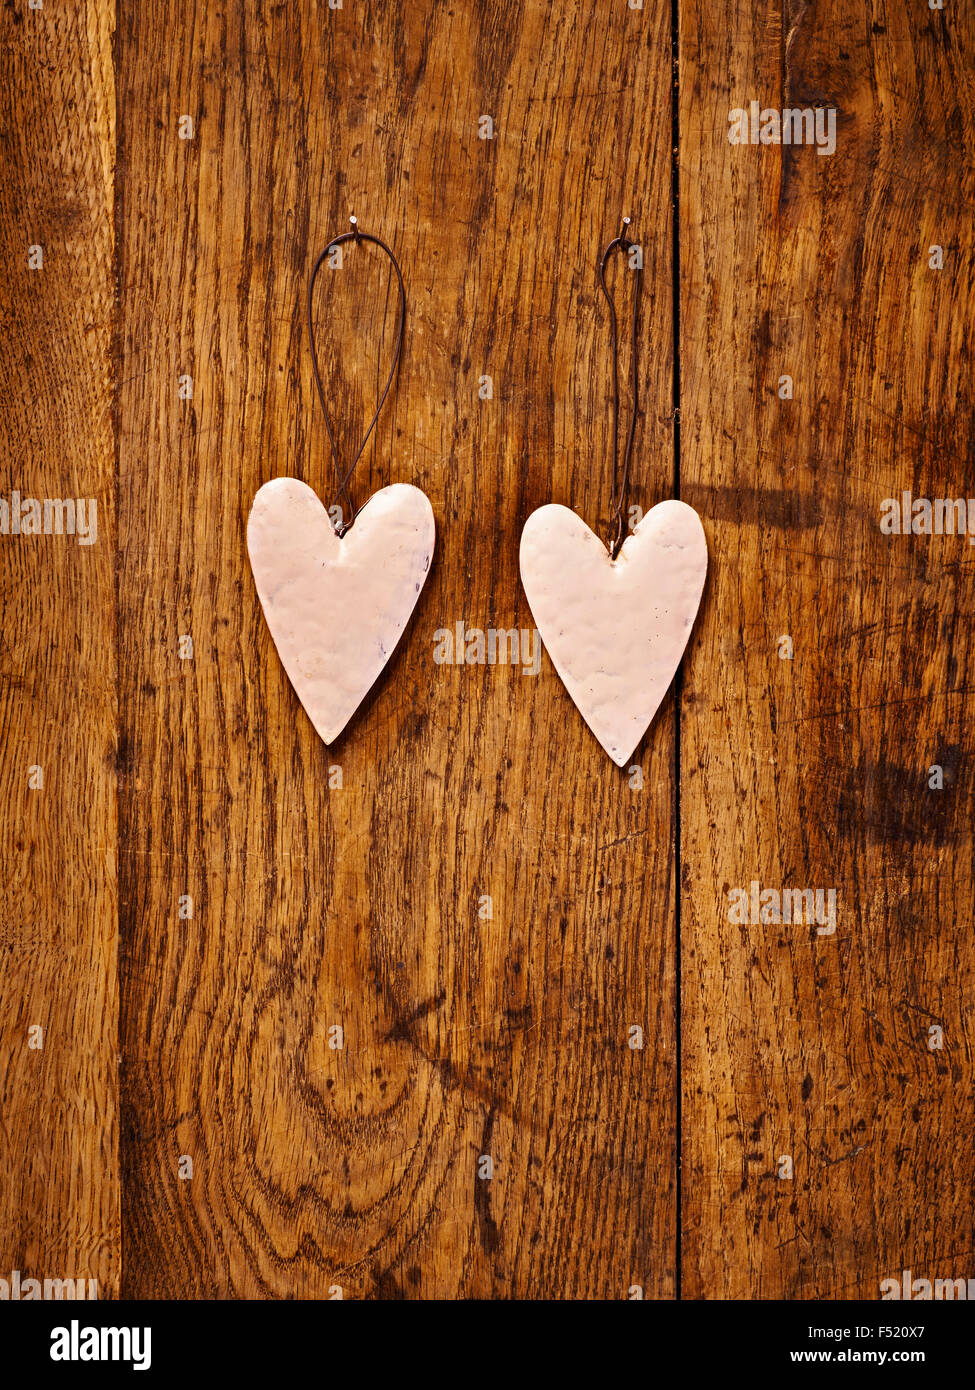 zwei Herzen aus Blech auf braunem Tisch Stock Photo